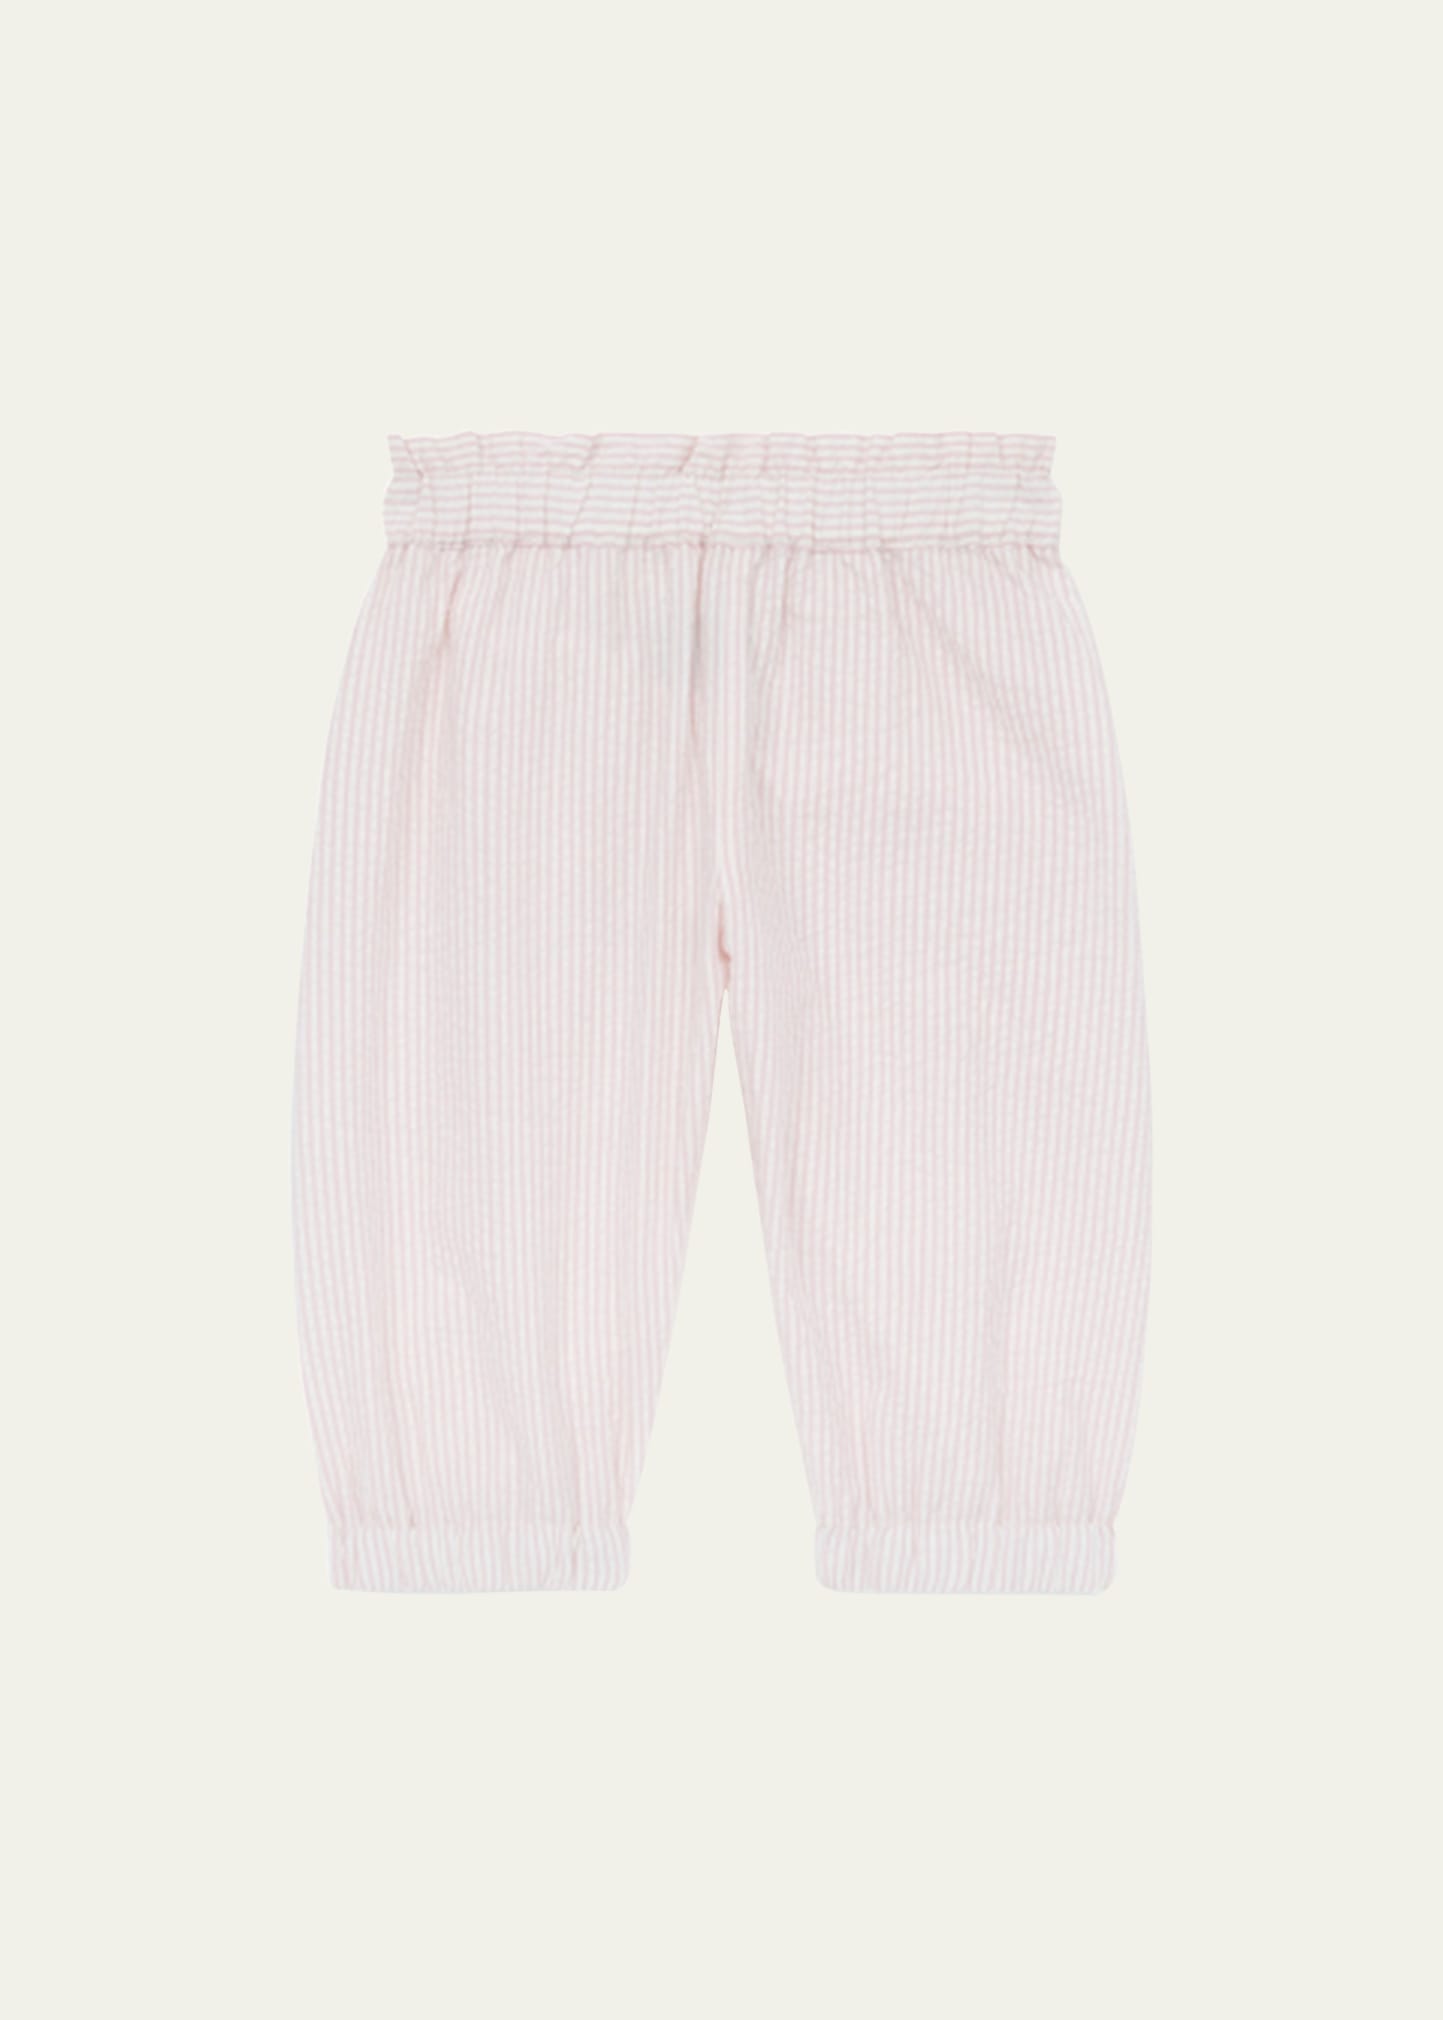 Bonton Girl's Striped Cotton Pants, Size 3M-2